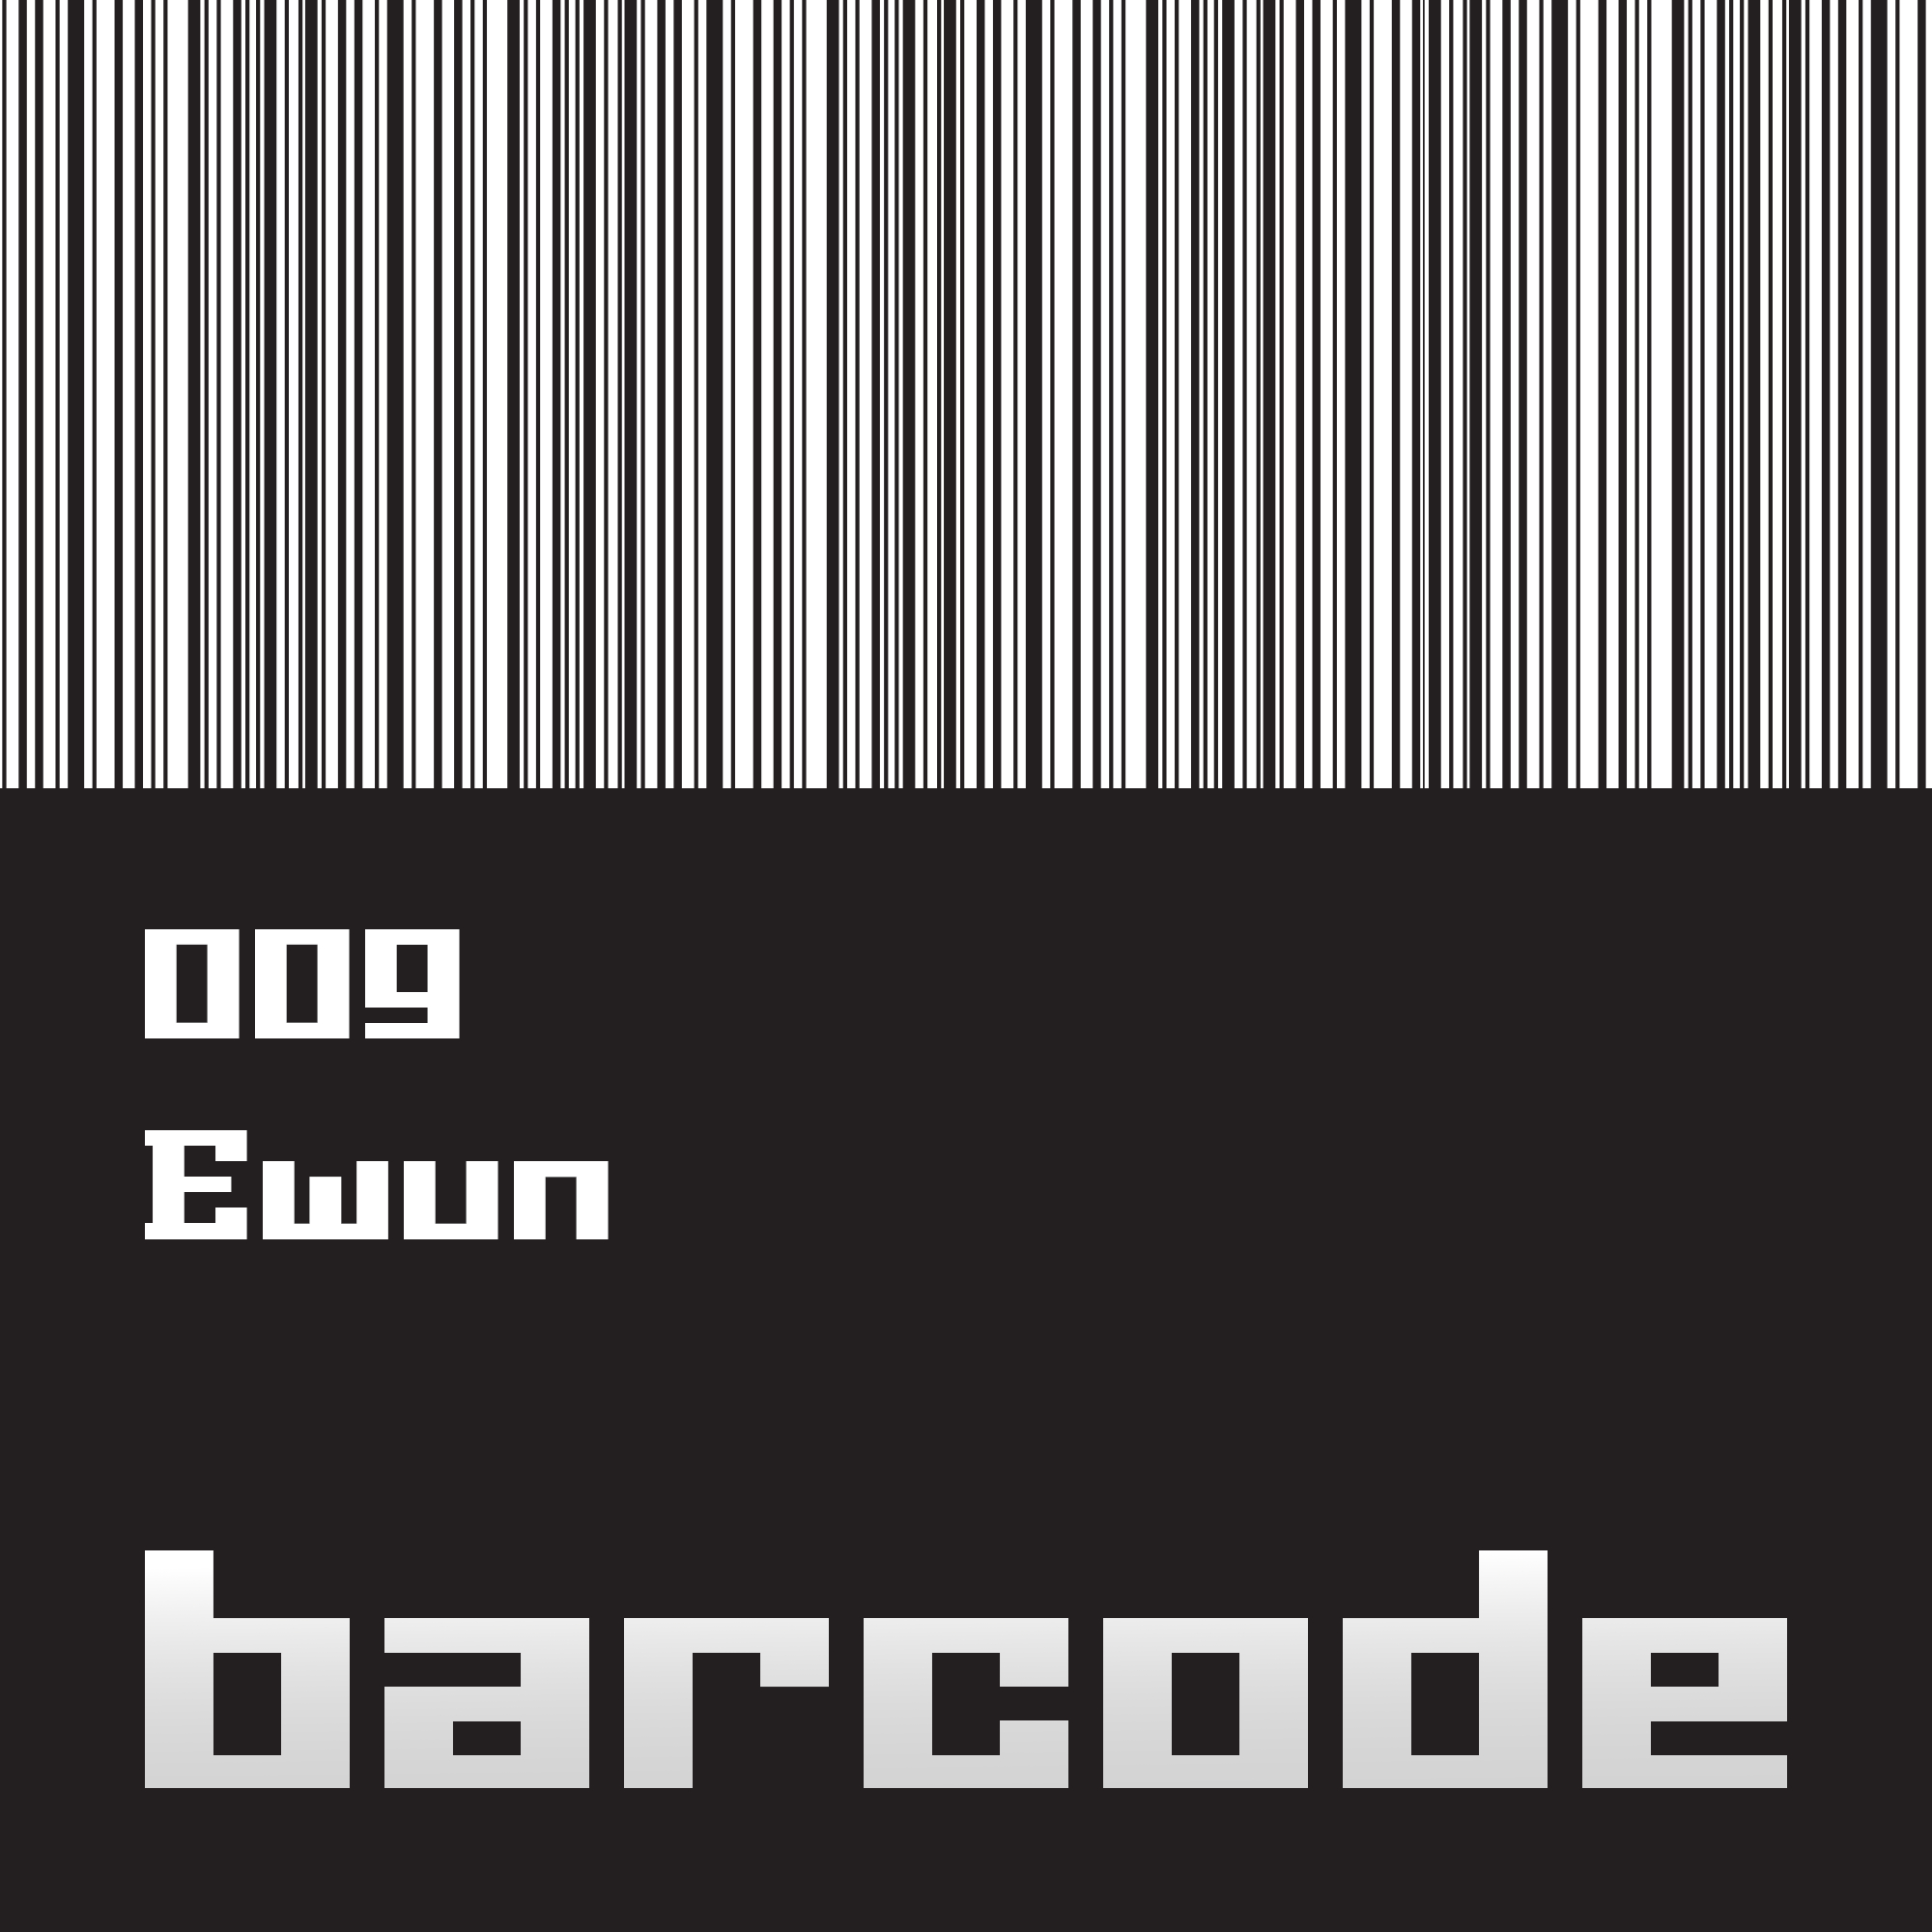 Barcode009.jpg